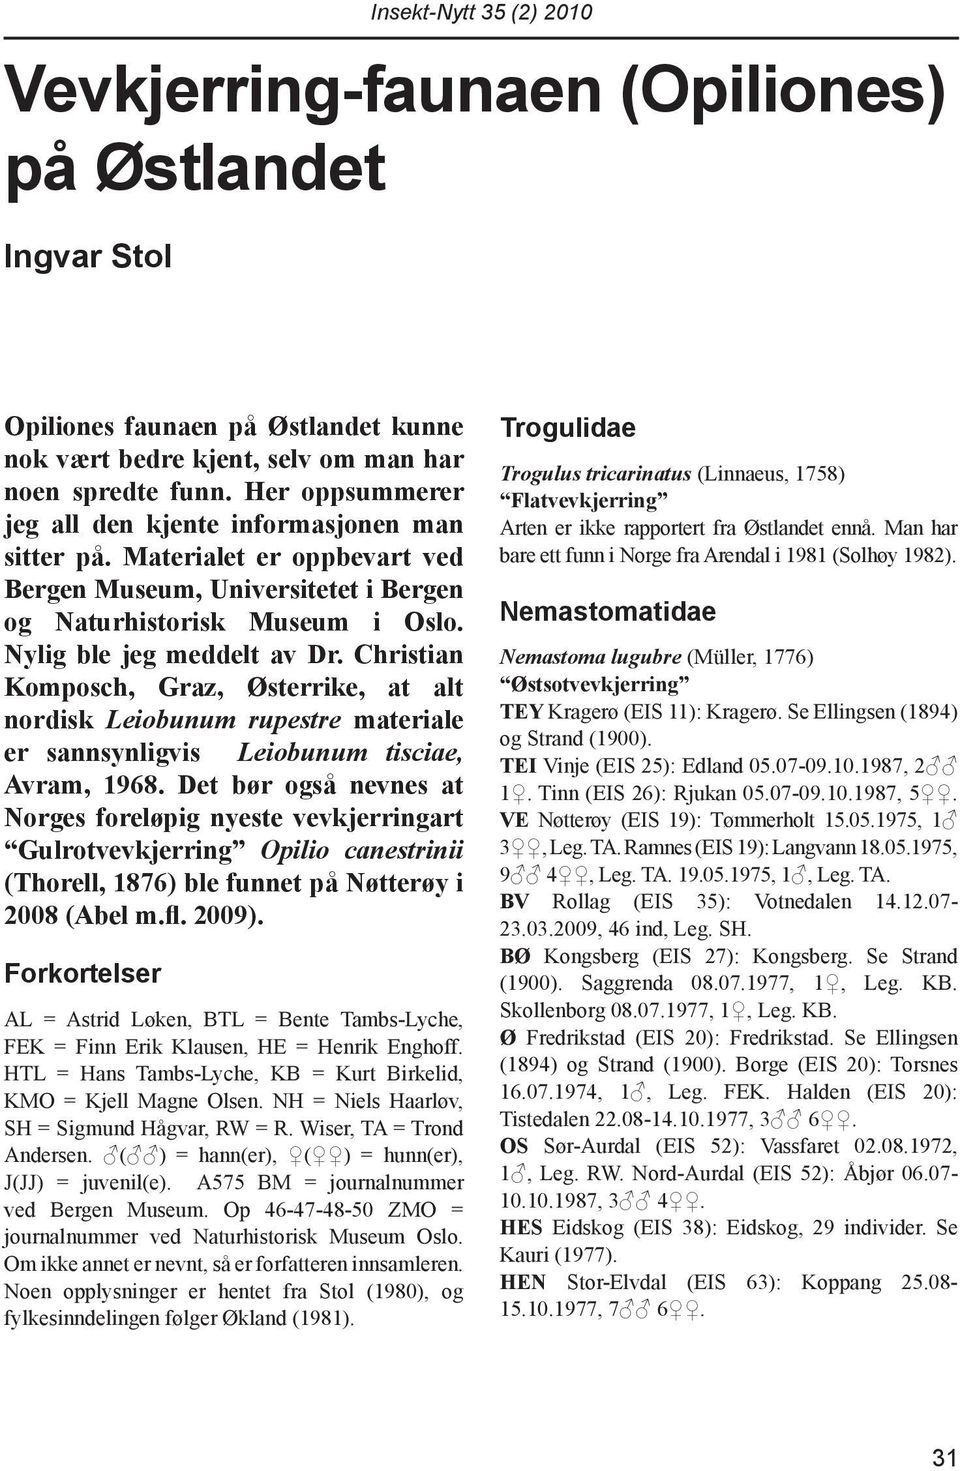 Christian Komposch, Graz, Østerrike, at alt nordisk Leiobunum rupestre materiale er sannsynligvis Leiobunum tisciae, Avram, 1968.